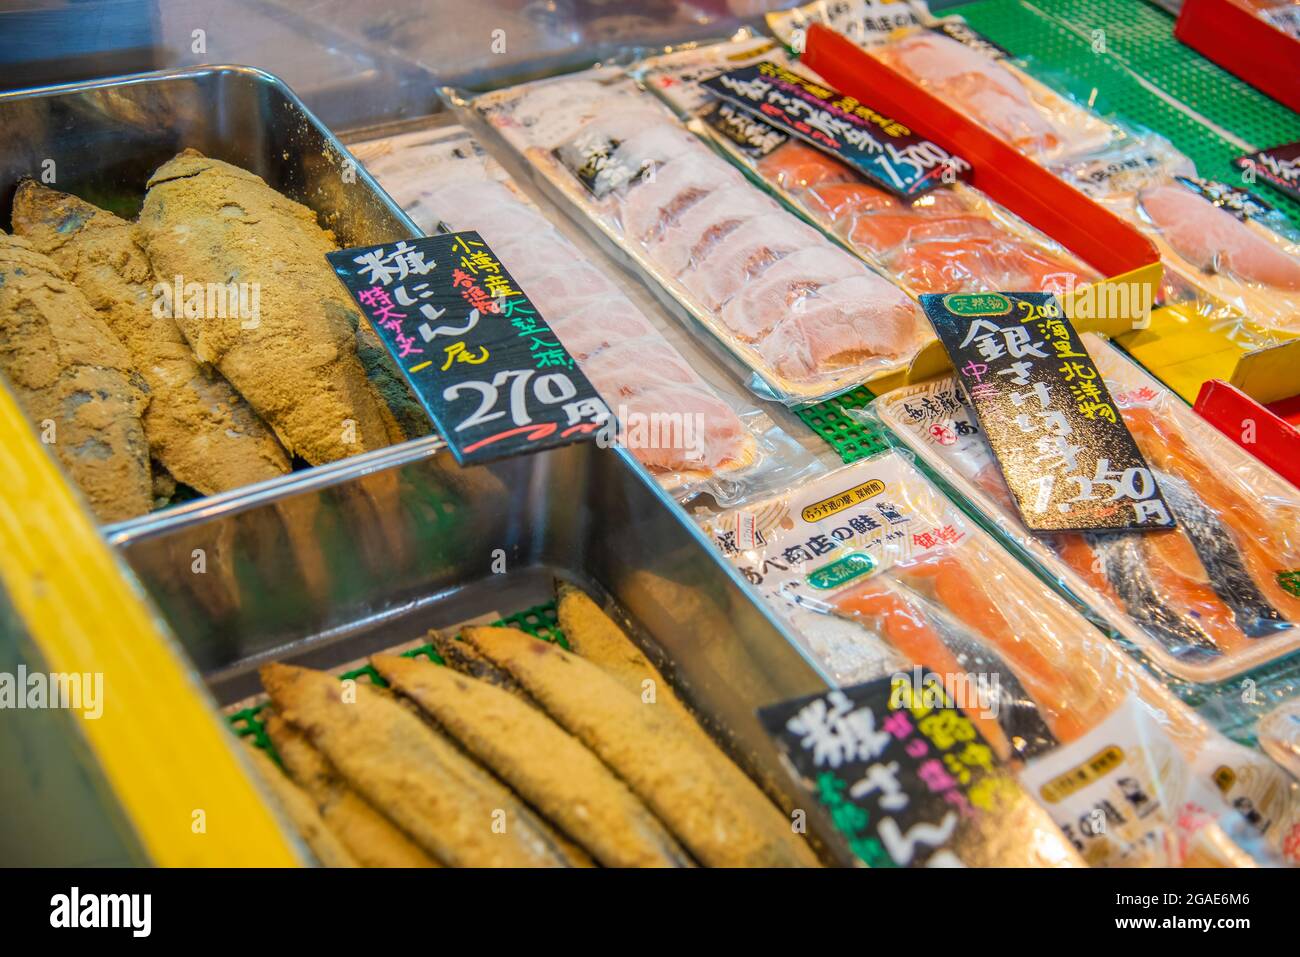 Rausu puerto pesquero productos frescos del océano expuestos en la tienda de mariscos de la ciudad de Rausu en la isla de Hokkaido, Japón. Tomado en la isla de Hokkaido, Japón el septiembre, Foto de stock